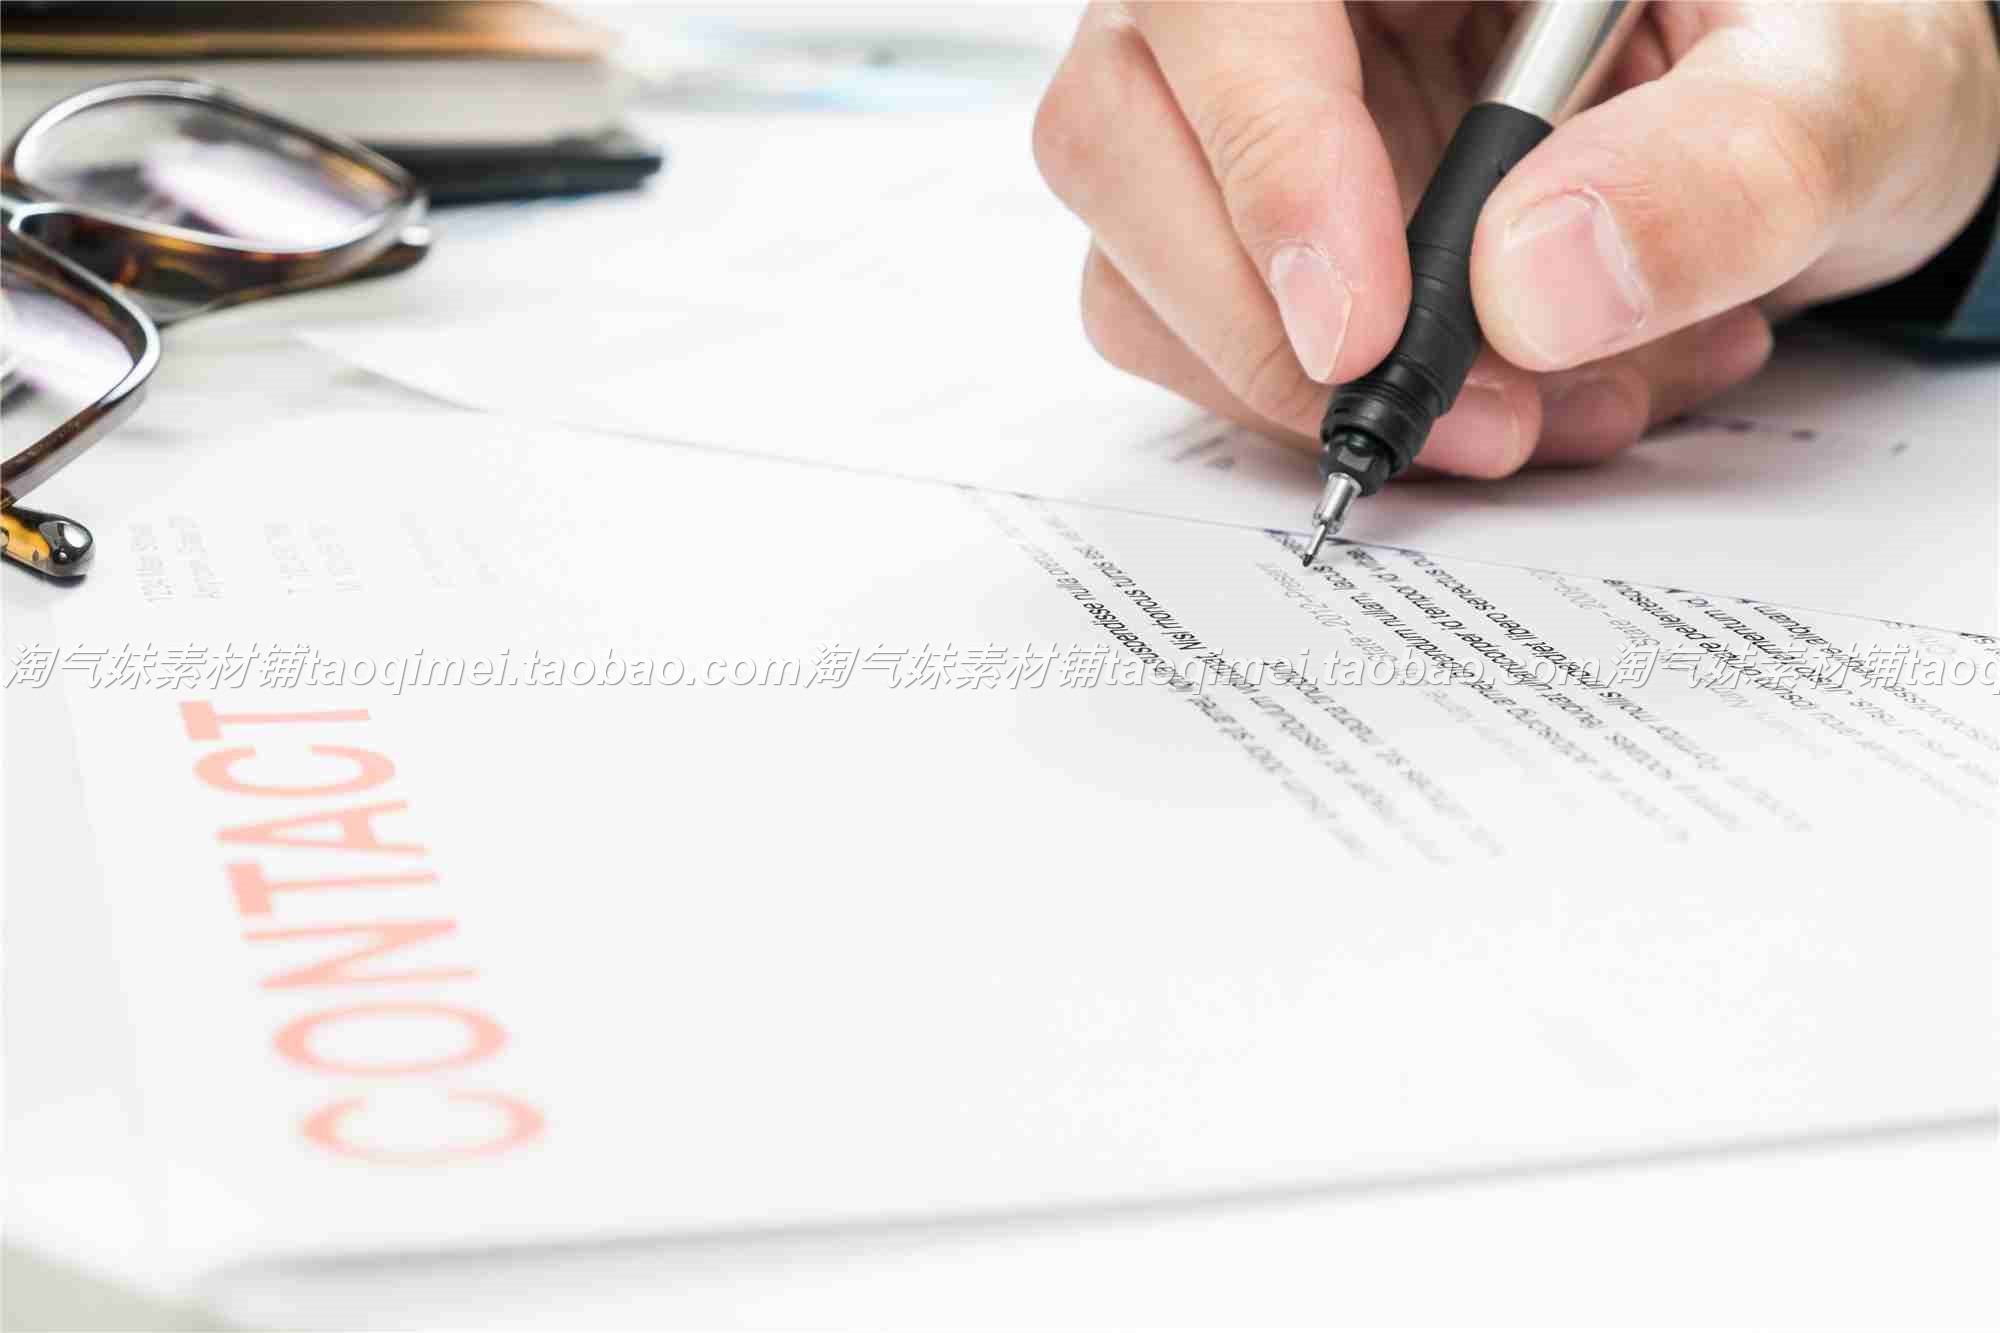 高清JPG签名签字图片商务白领签合同写字签约手握笔背景设计素材 - 图3